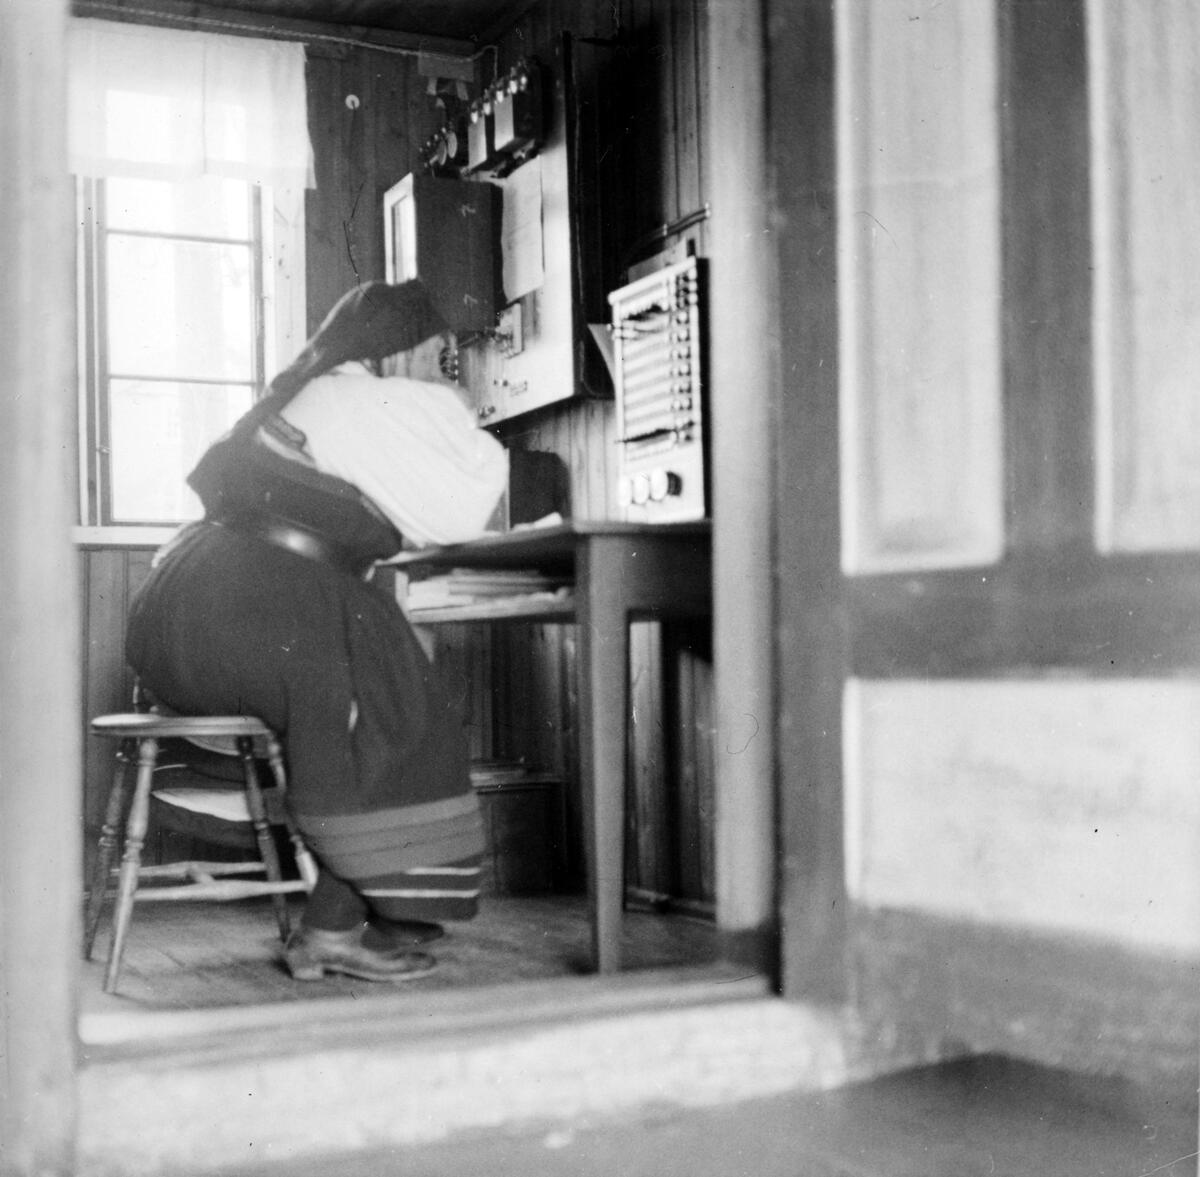 En kvinne i norsk folkedrakt sitter på en krakk i et lite rom, med telegrafutstyr. Svart-hvitt fotografi.